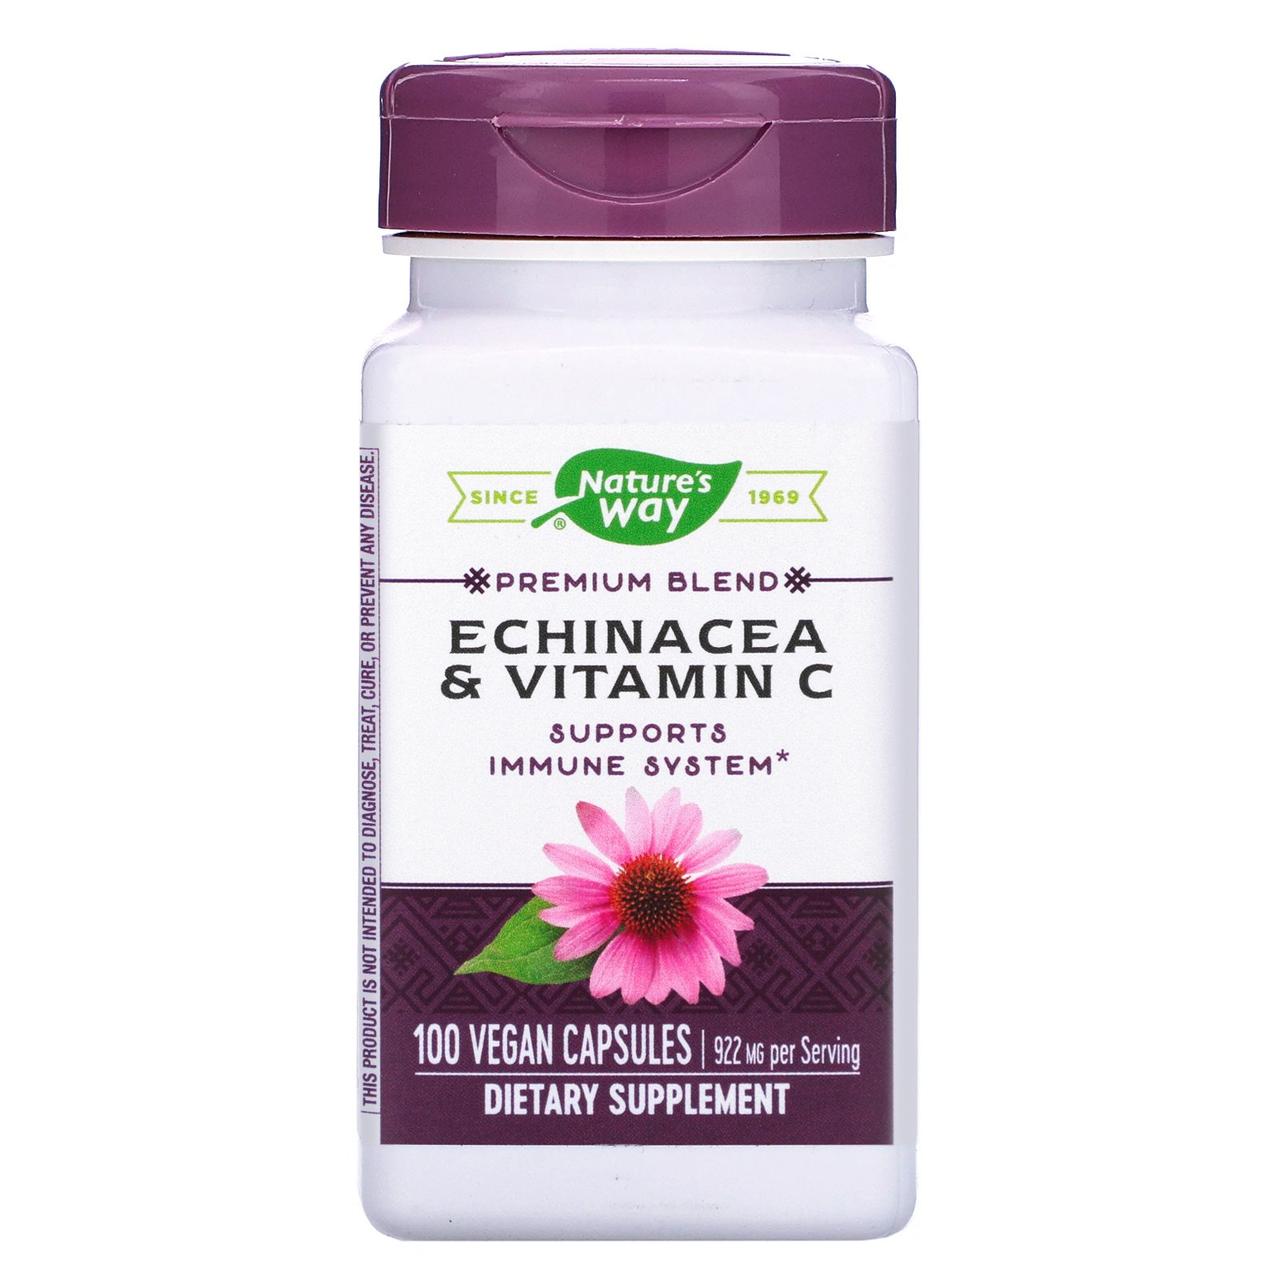 Ехінацея і вітамін С, Echinacea & Vitamin C, nature's Way, 922 мг, 100 капсул веганских